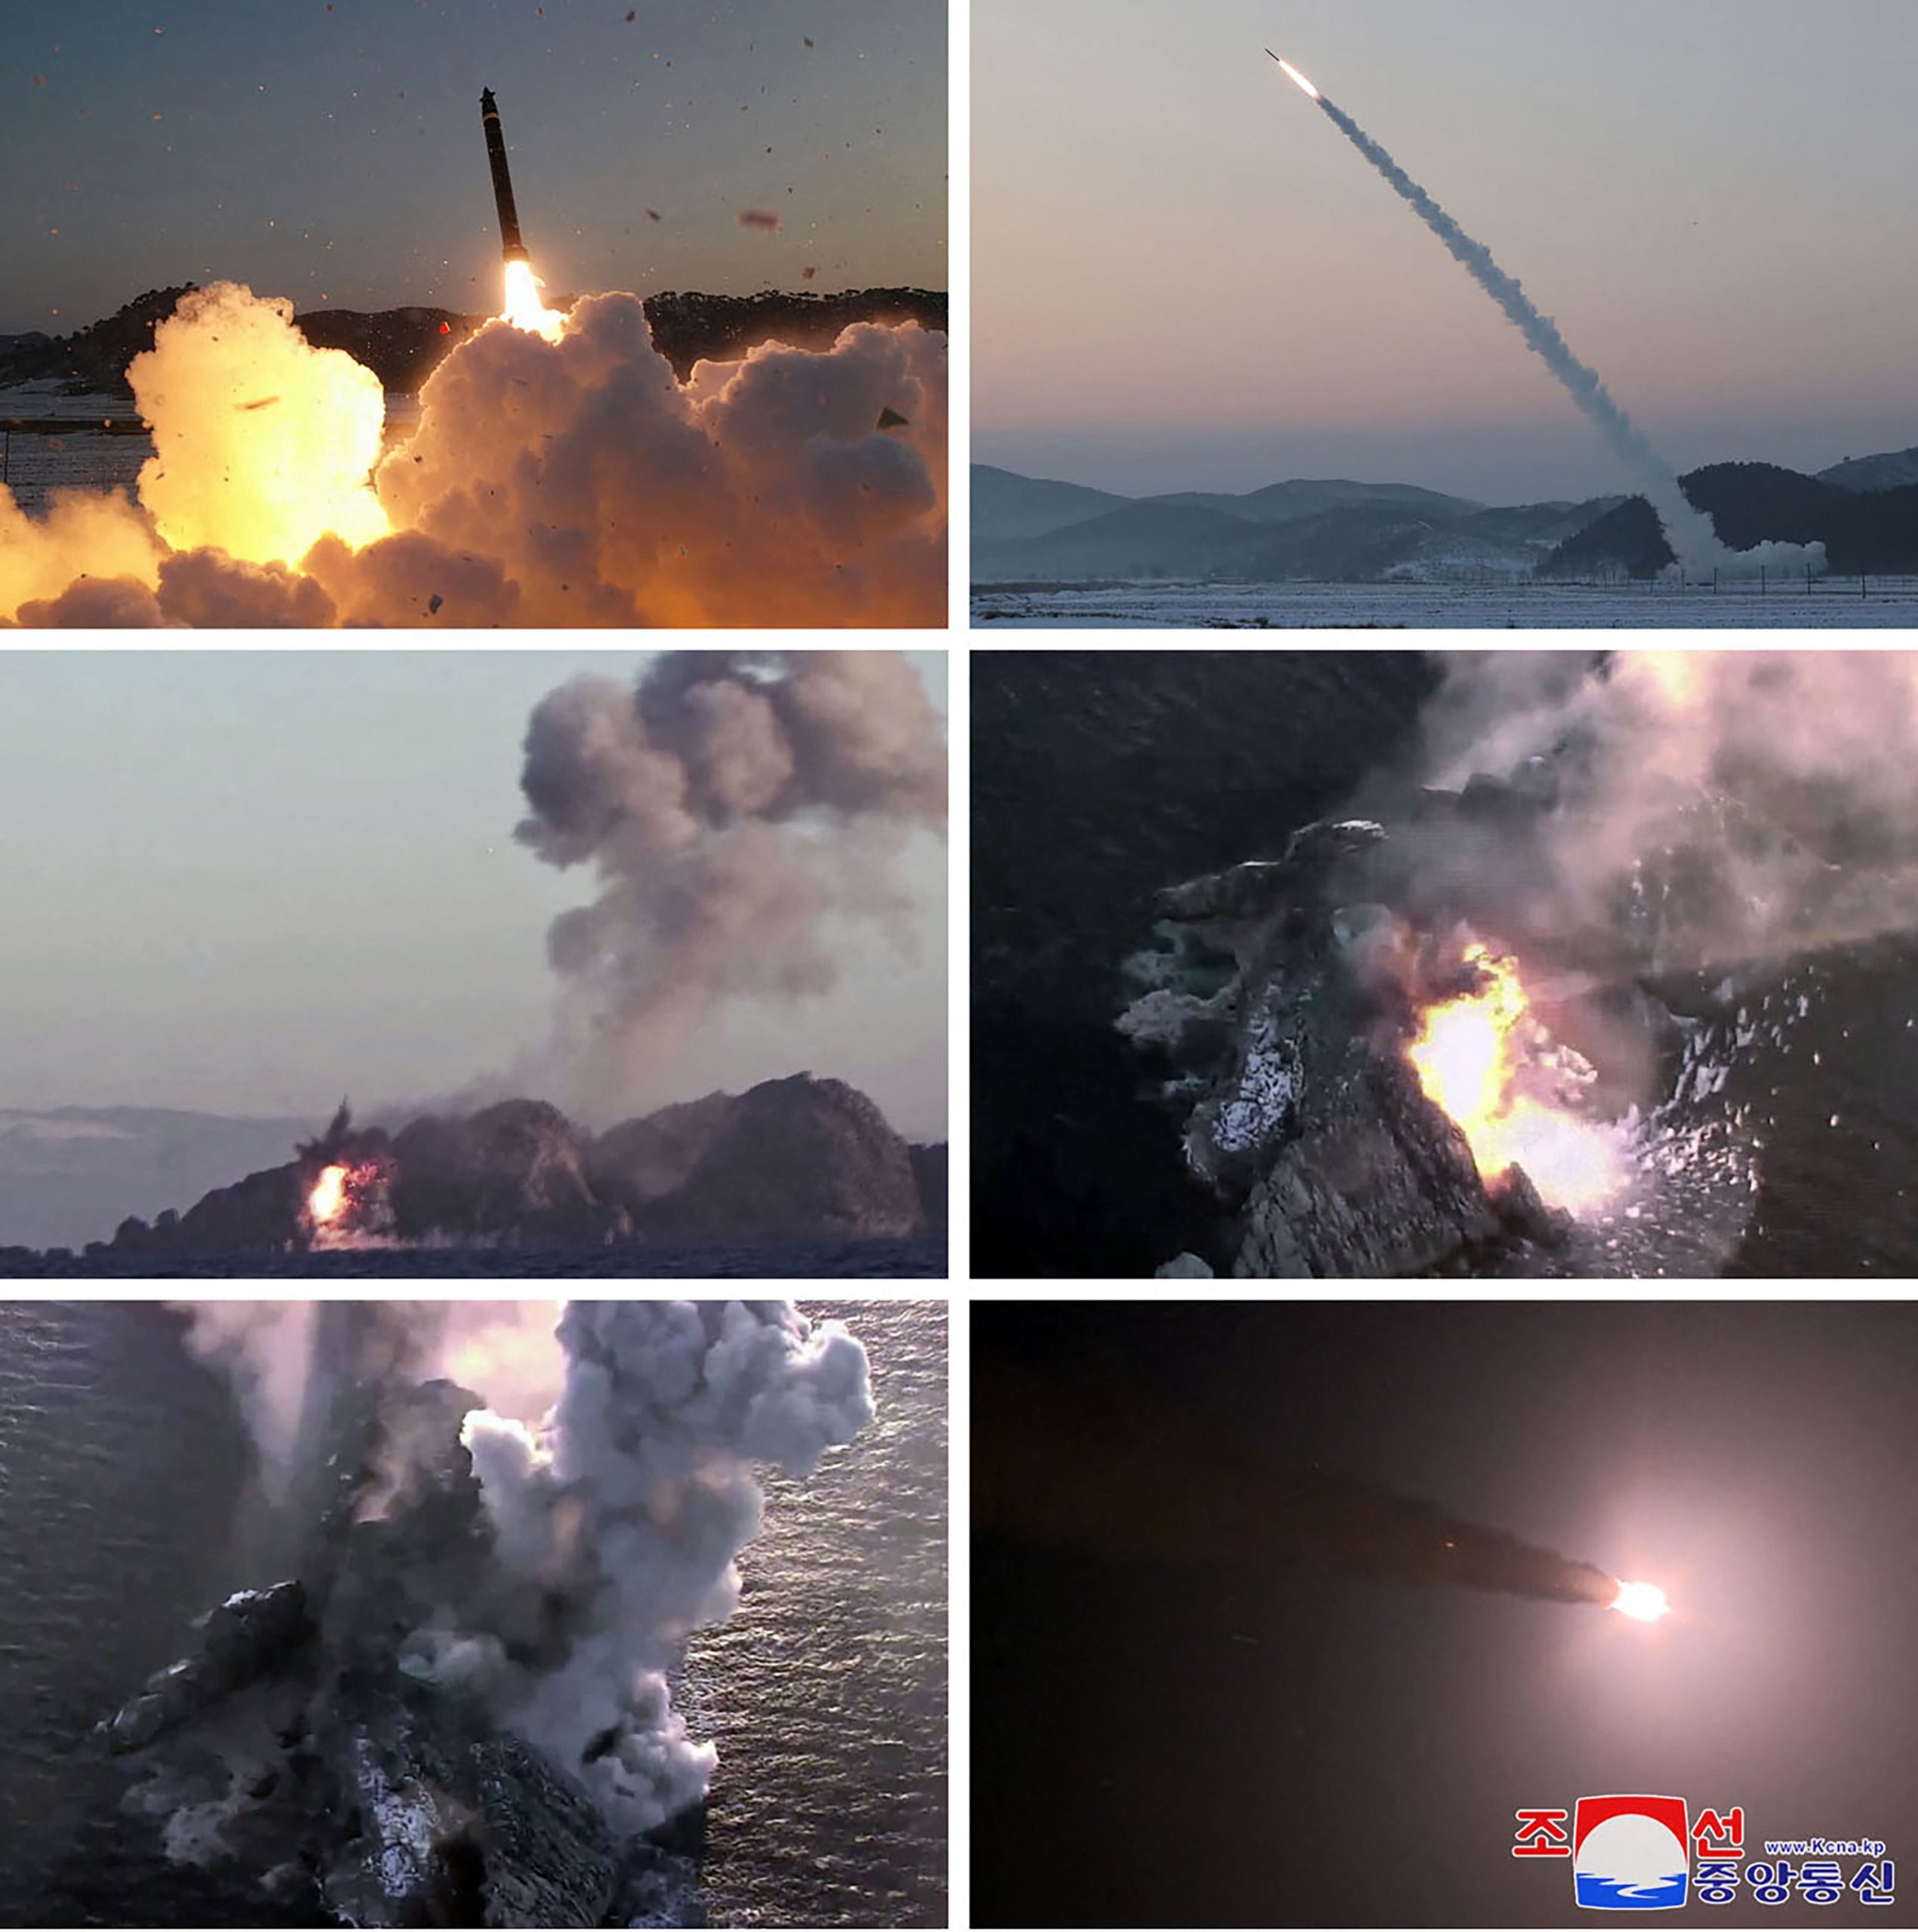 朝鲜两天连射4枚超大型火箭炮 韩国斥挑衅行为